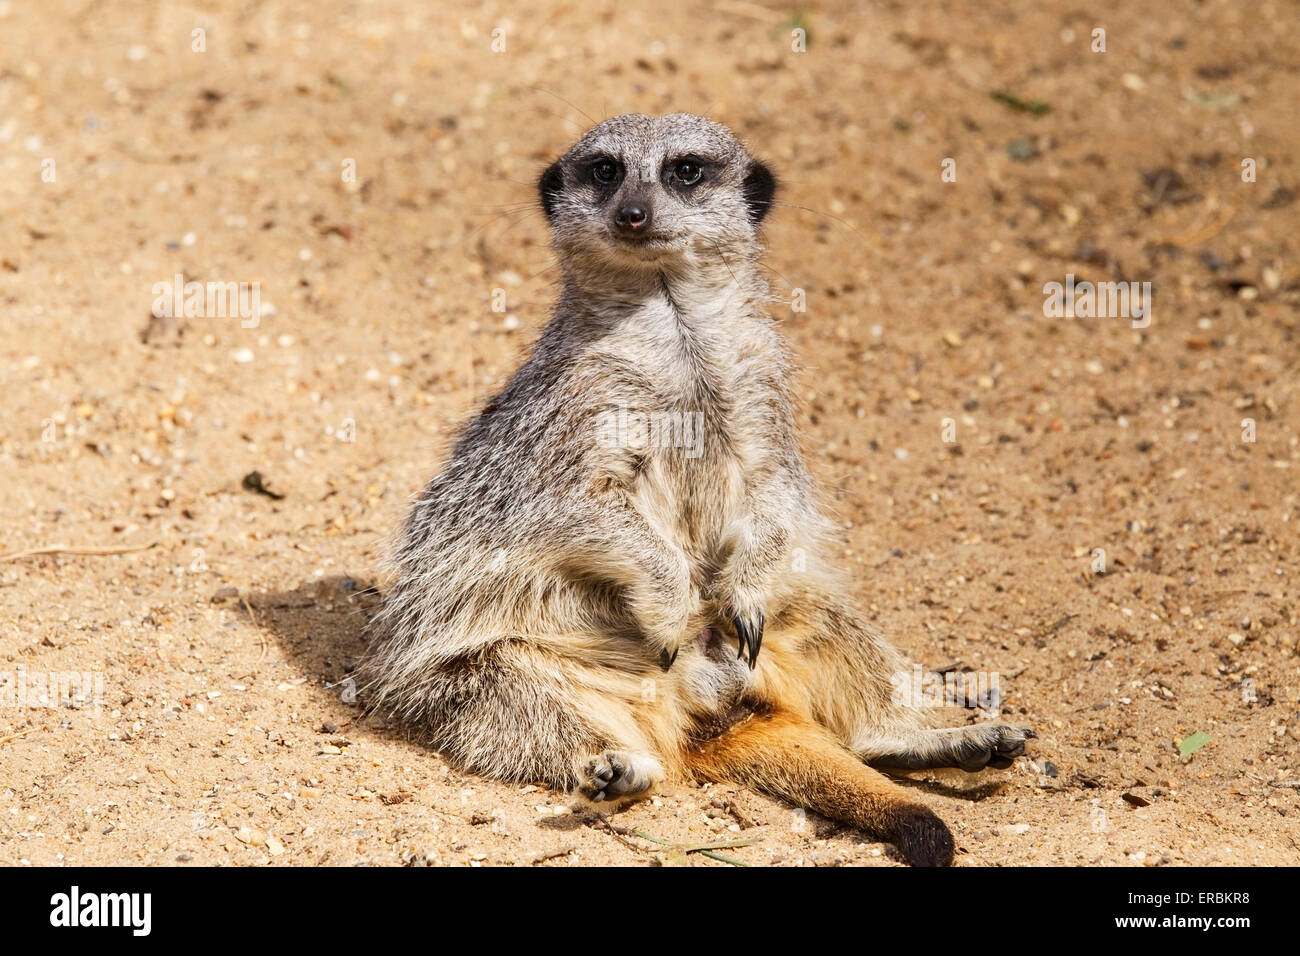 meerkat (Suricata suricatta) adult resting on sandy soil Stock Photo